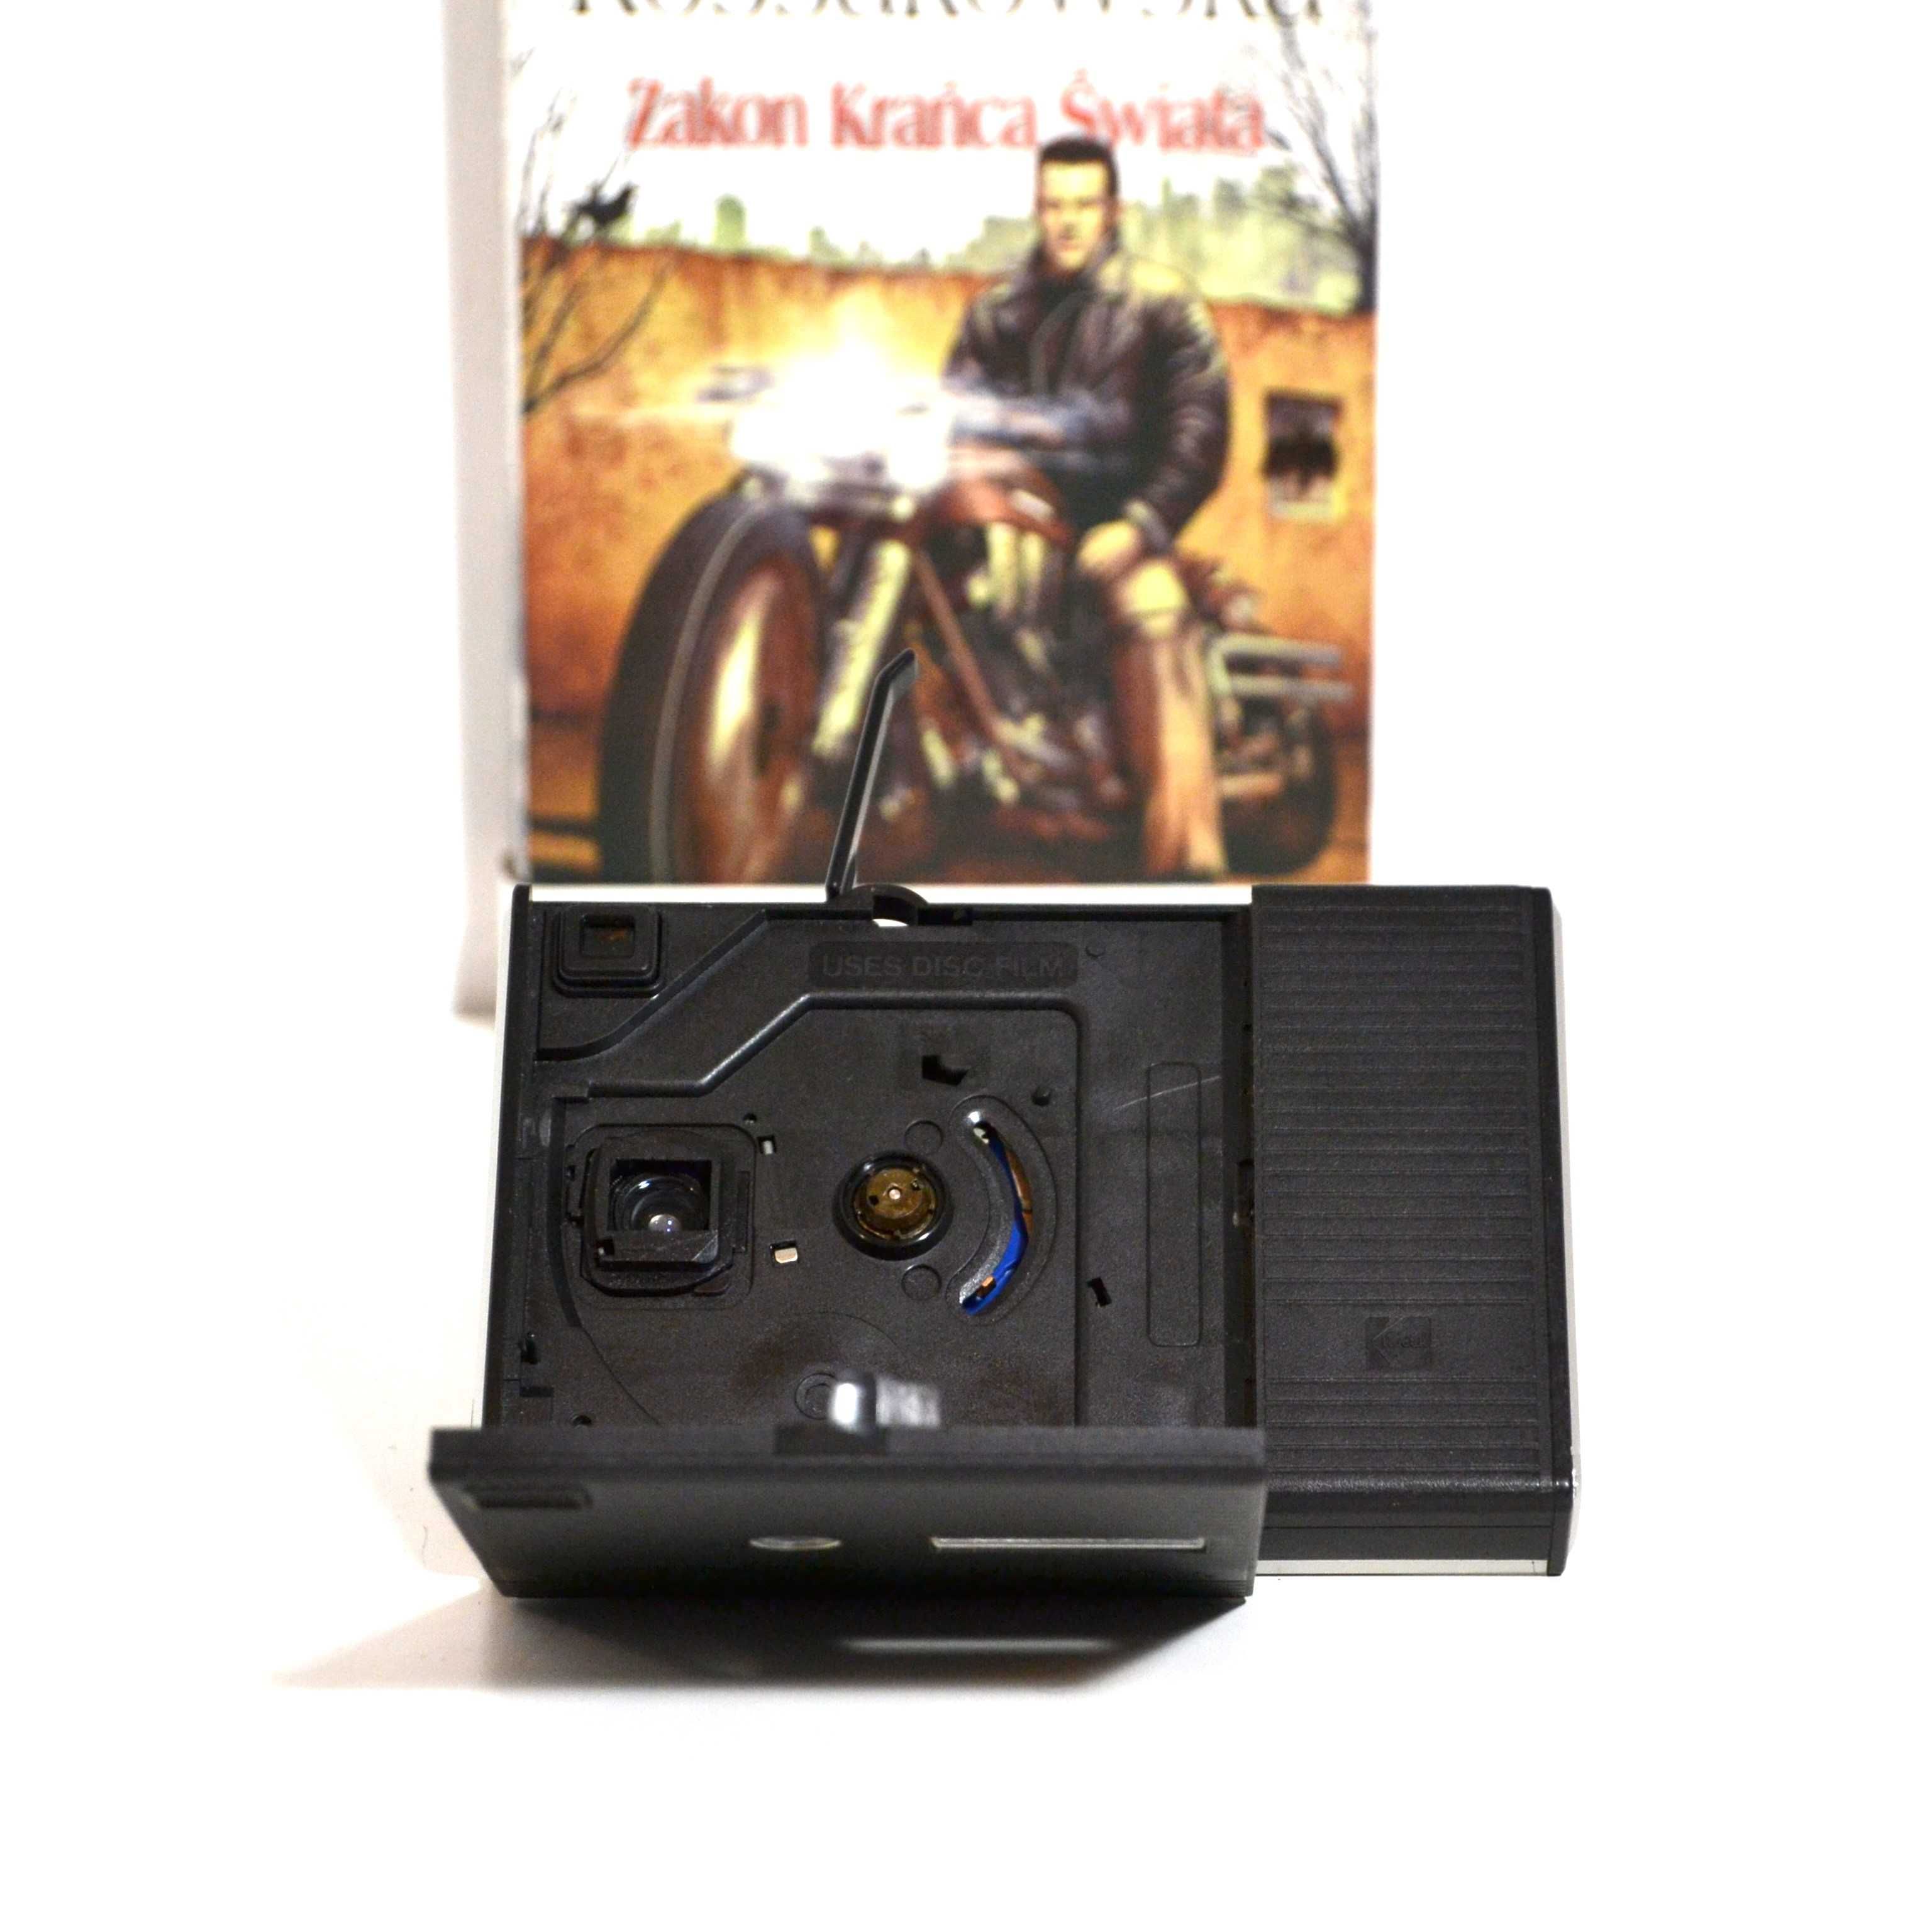 Ciekawy analogowy aparat fotograficzny KODAK DISC 4000 z roku 1982